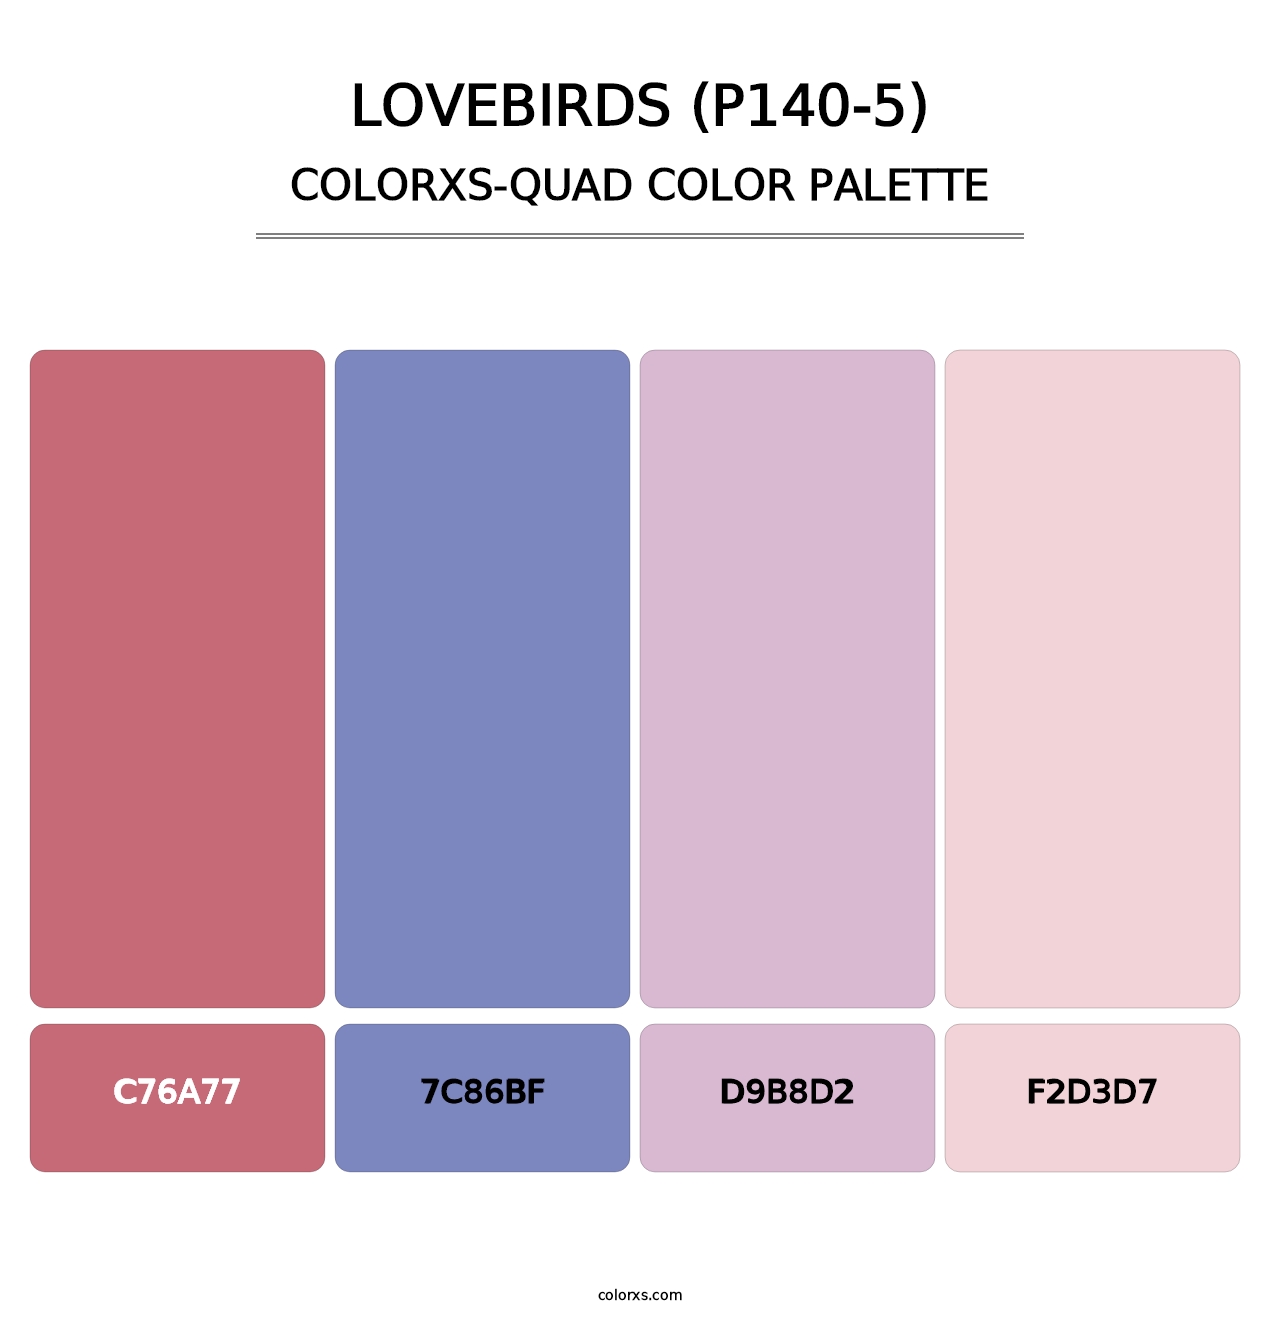 Lovebirds (P140-5) - Colorxs Quad Palette